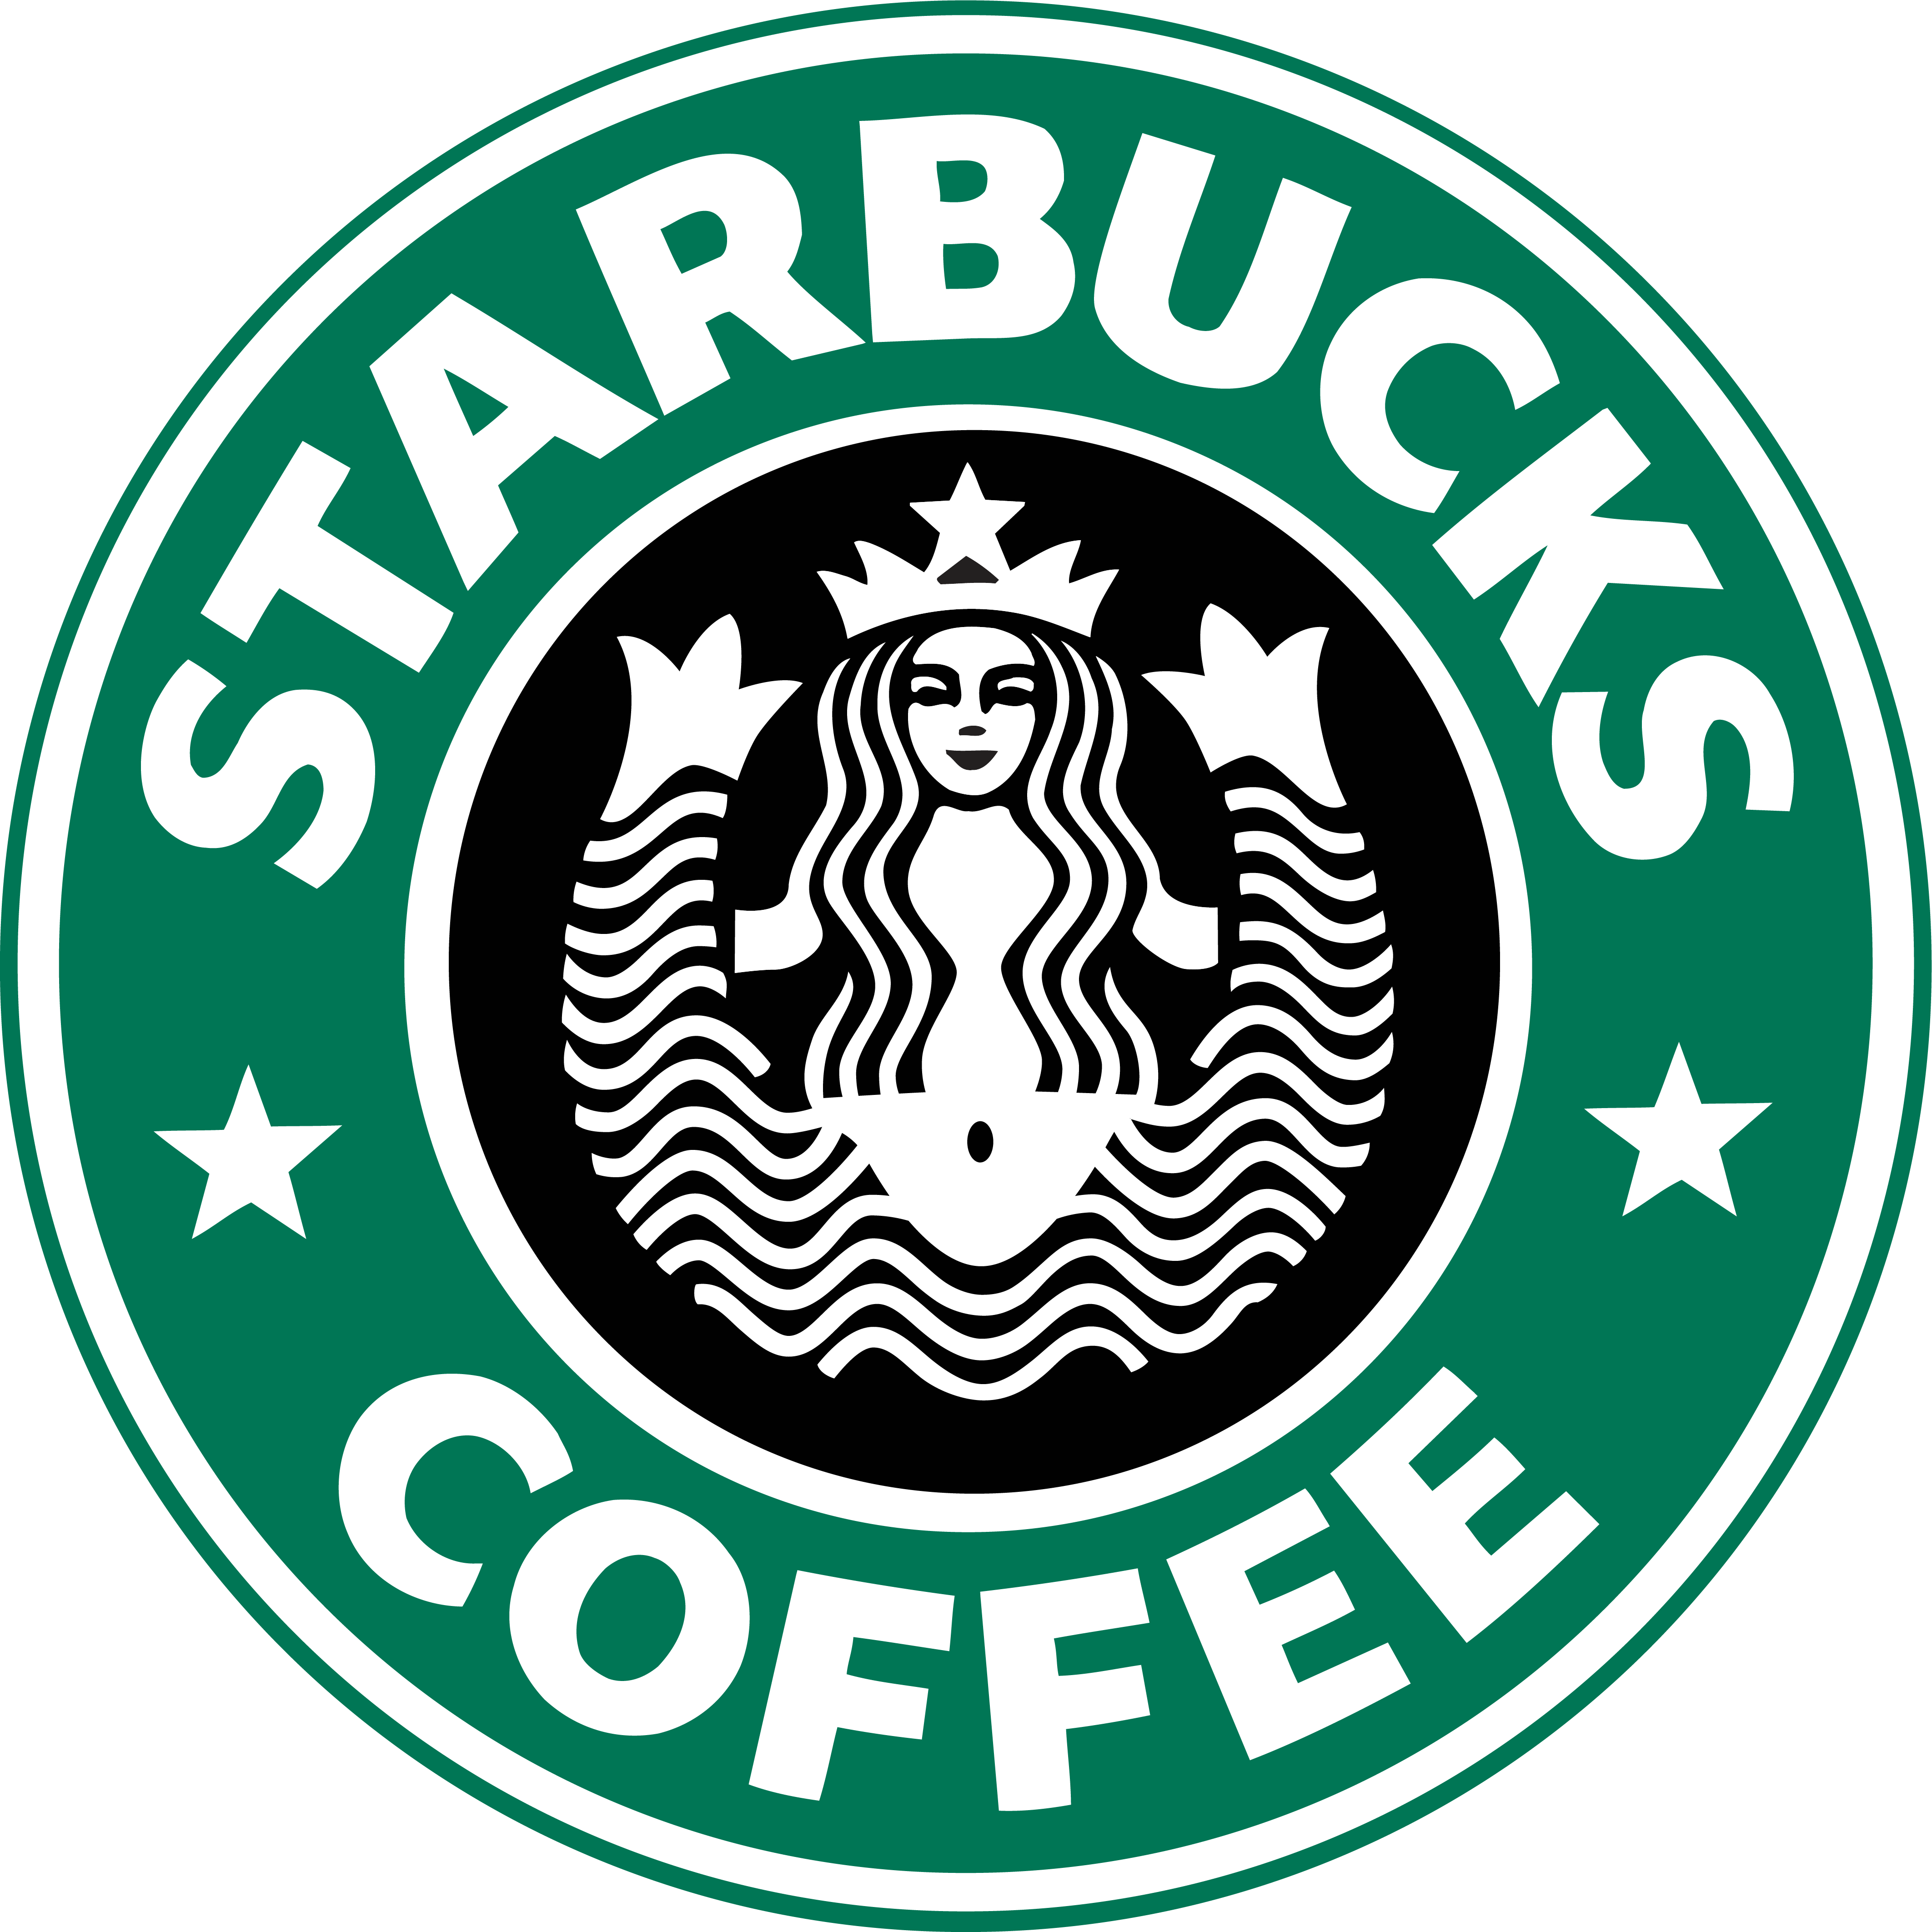 Star Bucks Logo Png / Starbucks clipart logo starbucks, Starbucks logo